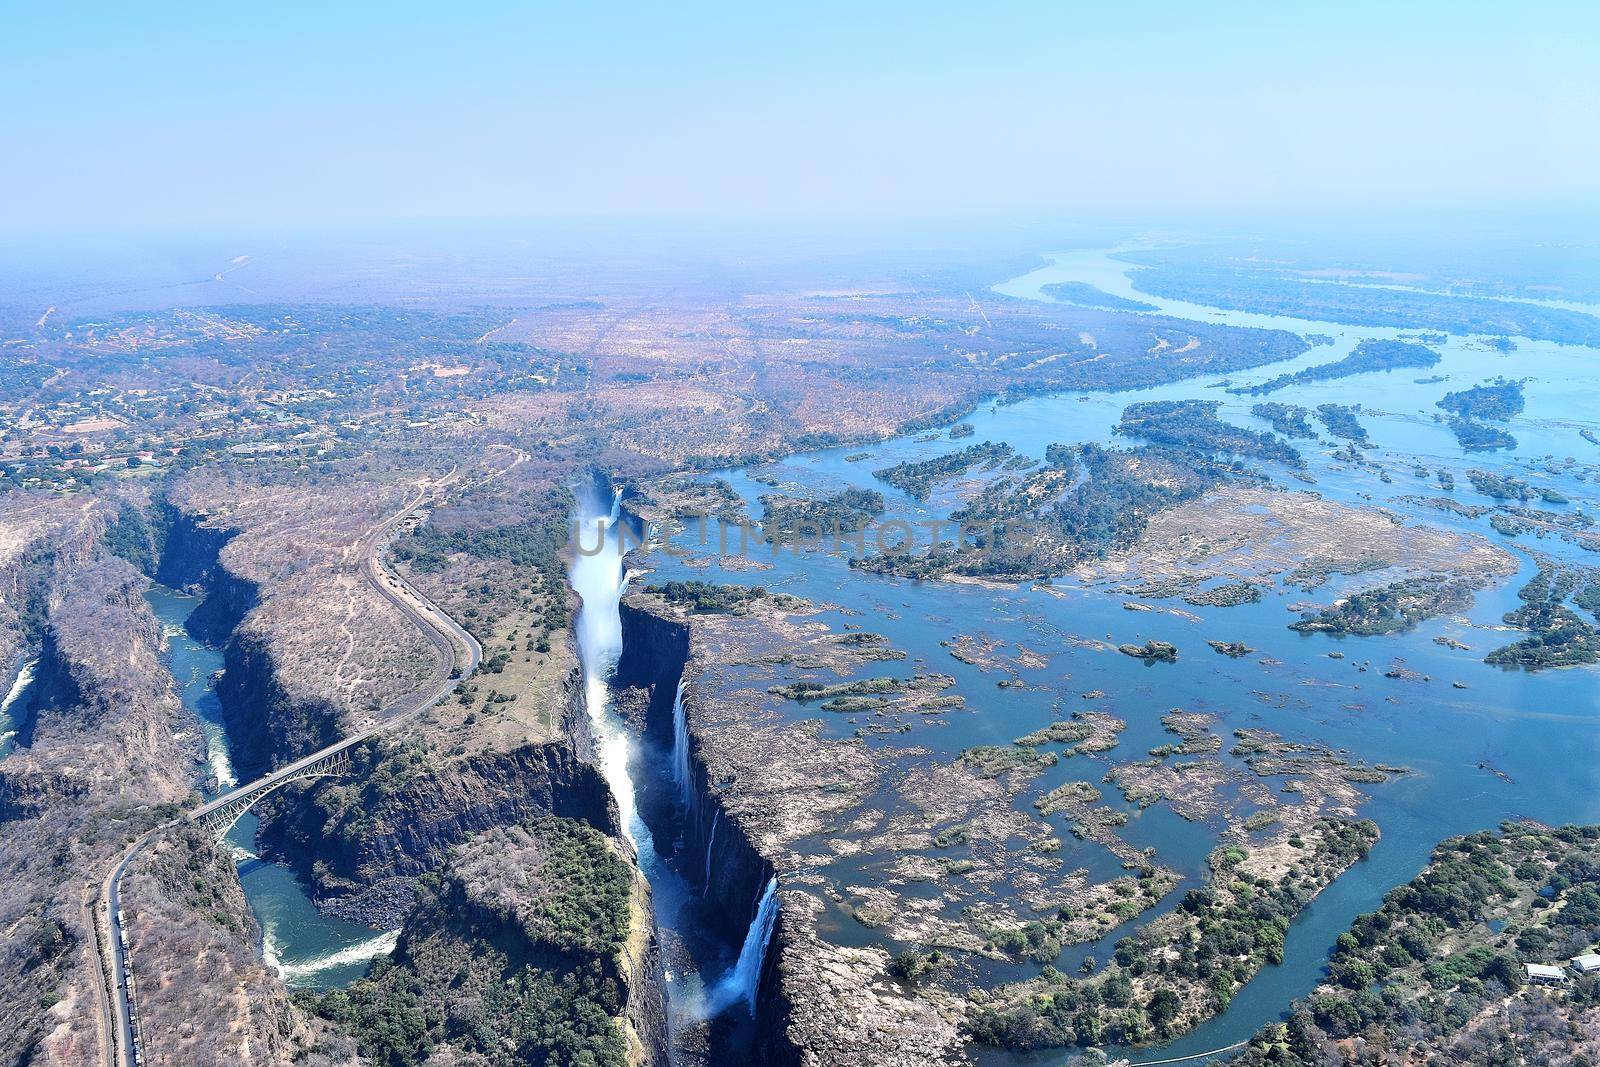 Aerial view of Victoria Falls and Zambezi river